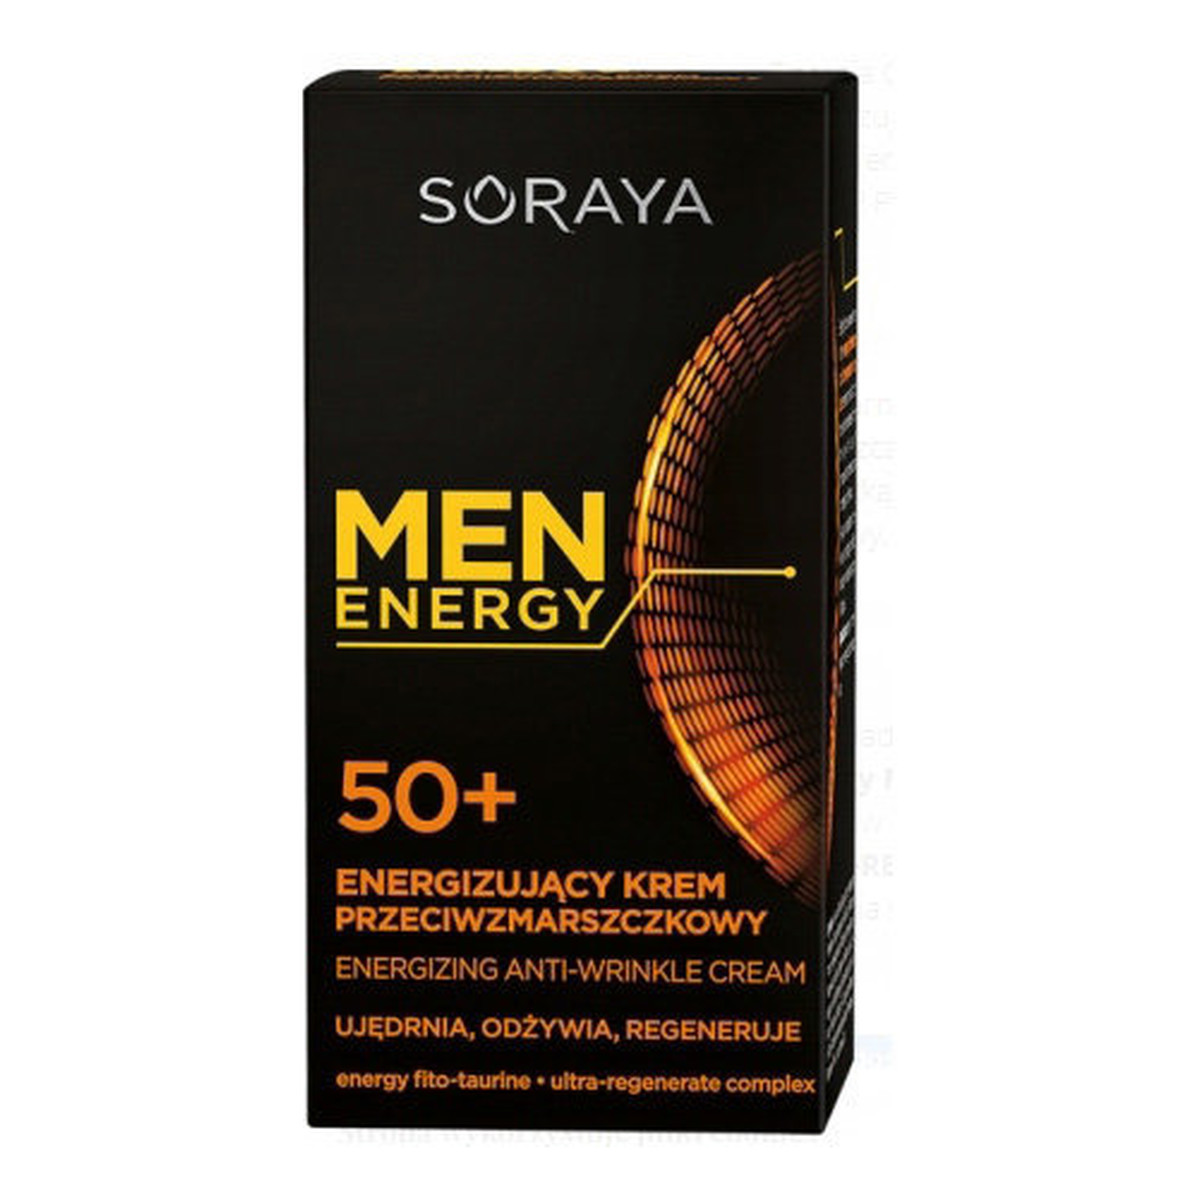 Soraya Men Energy 50+ KREM DO TWARZY ENERGIZUJĄCY PRZECIWZMARSZCZKOWY 50ml